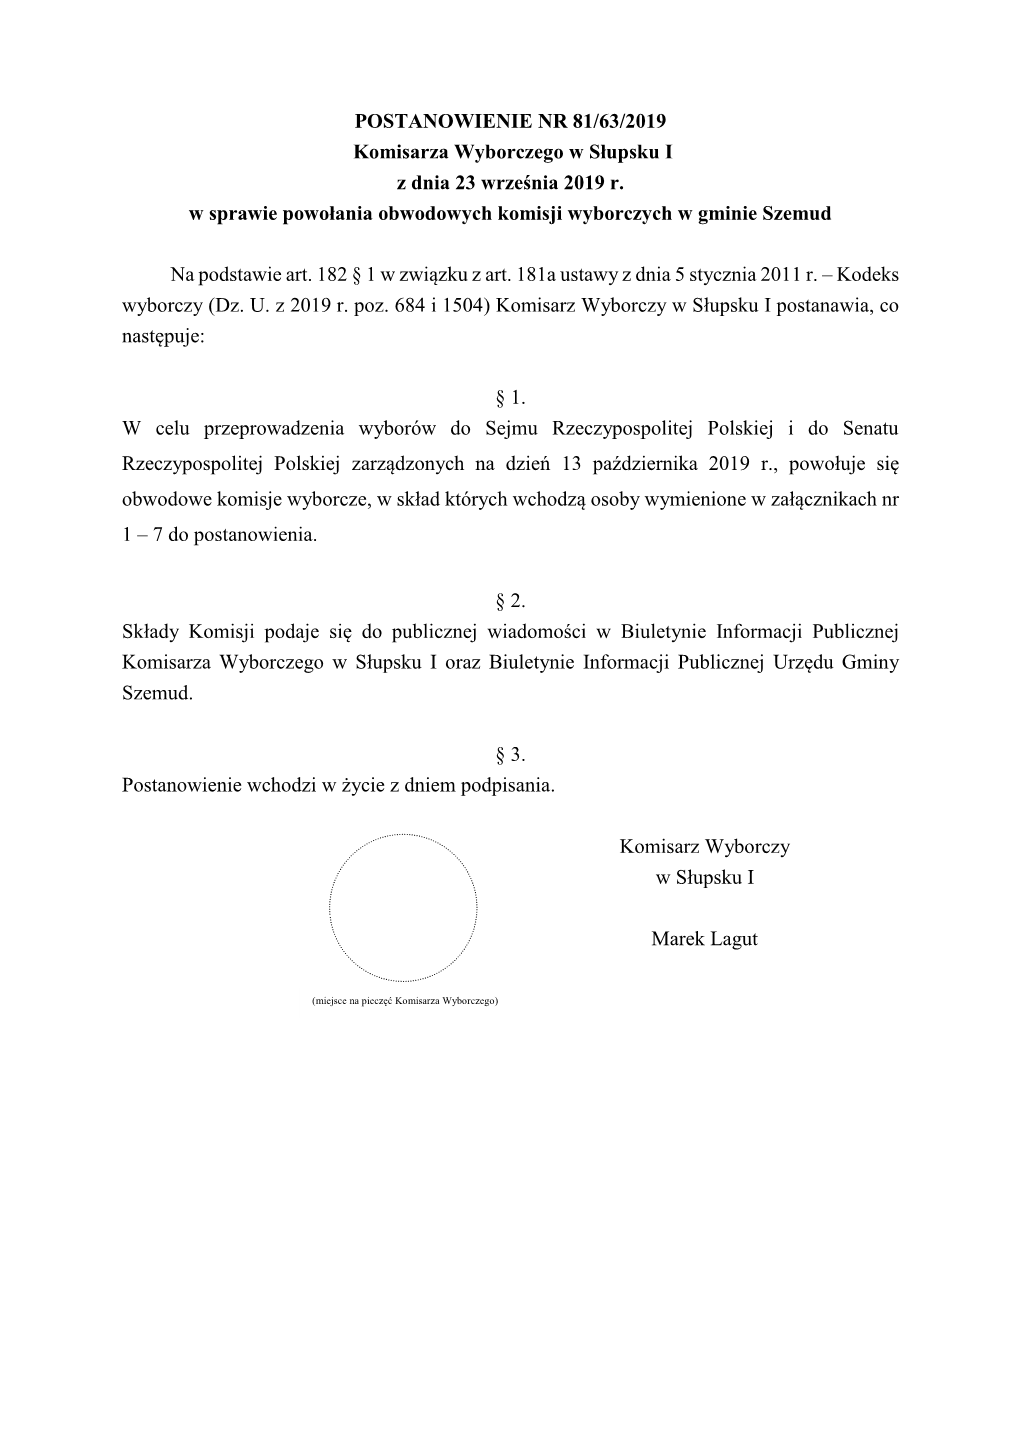 POSTANOWIENIE NR 81/63/2019 Komisarza Wyborczego W Słupsku I Z Dnia 23 Września 2019 R